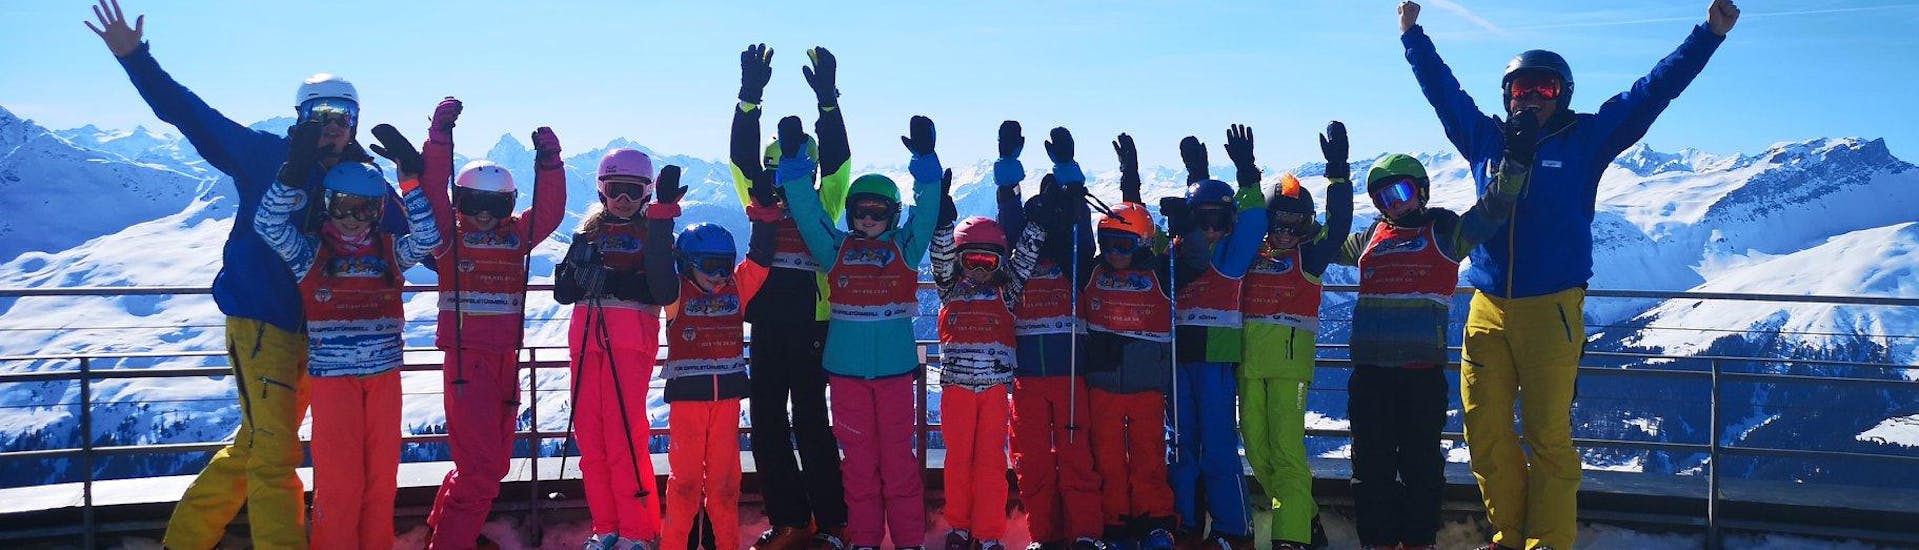 Skilessen voor Kinderen "Parsenn" (8-14 jaar) voor Gevorderden.